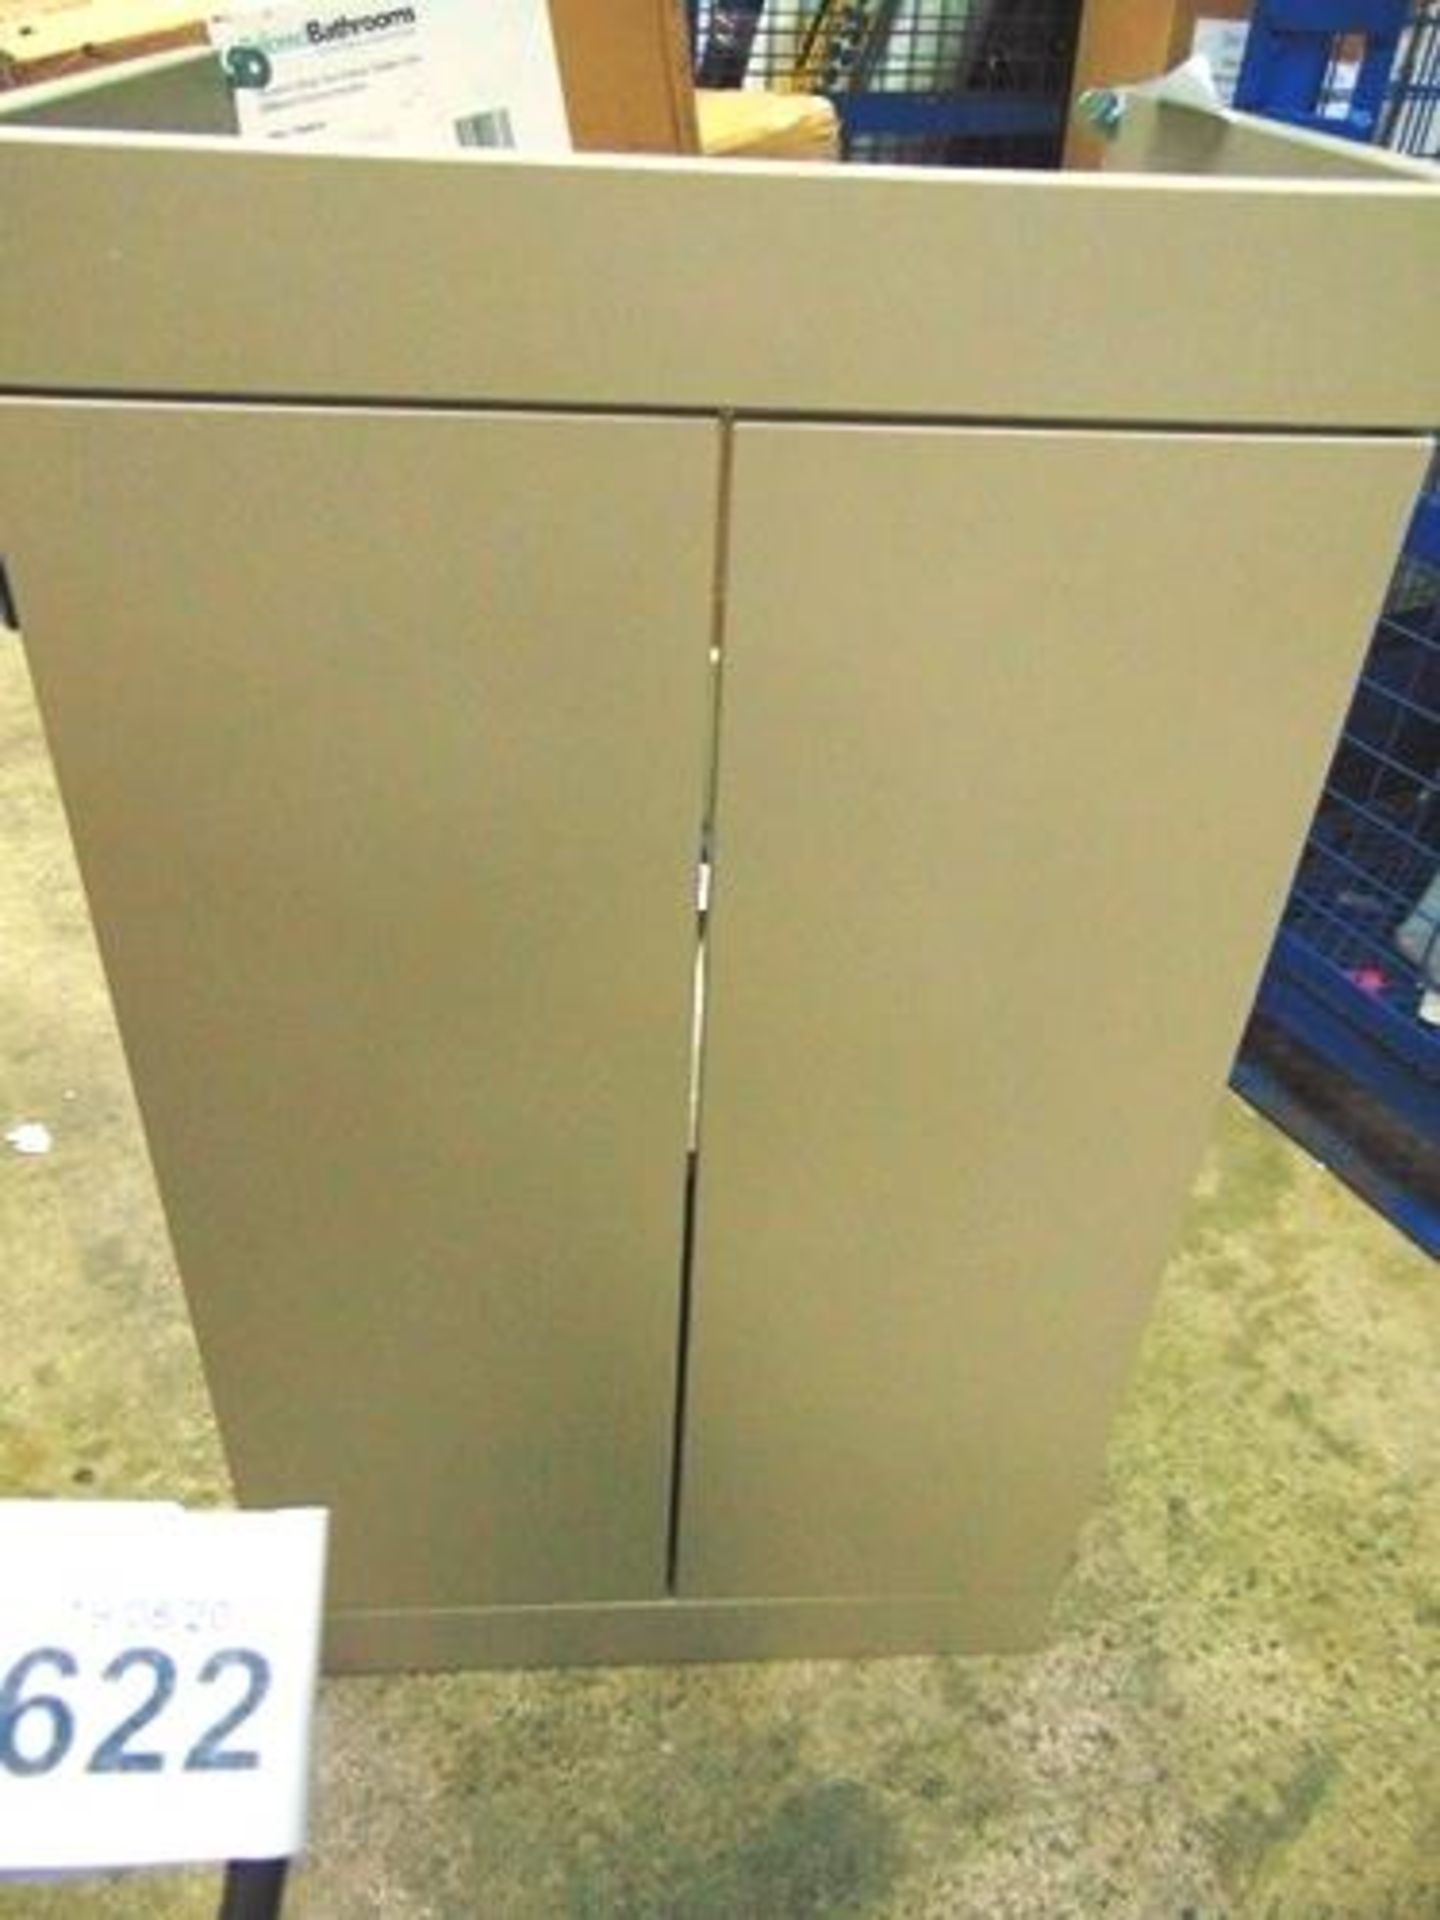 1 x floor standing 2 door basin unit, model MOC502, 87cm(H) x 50cm(W) x 38.5cm(D) - New (GSF49) - Image 2 of 3